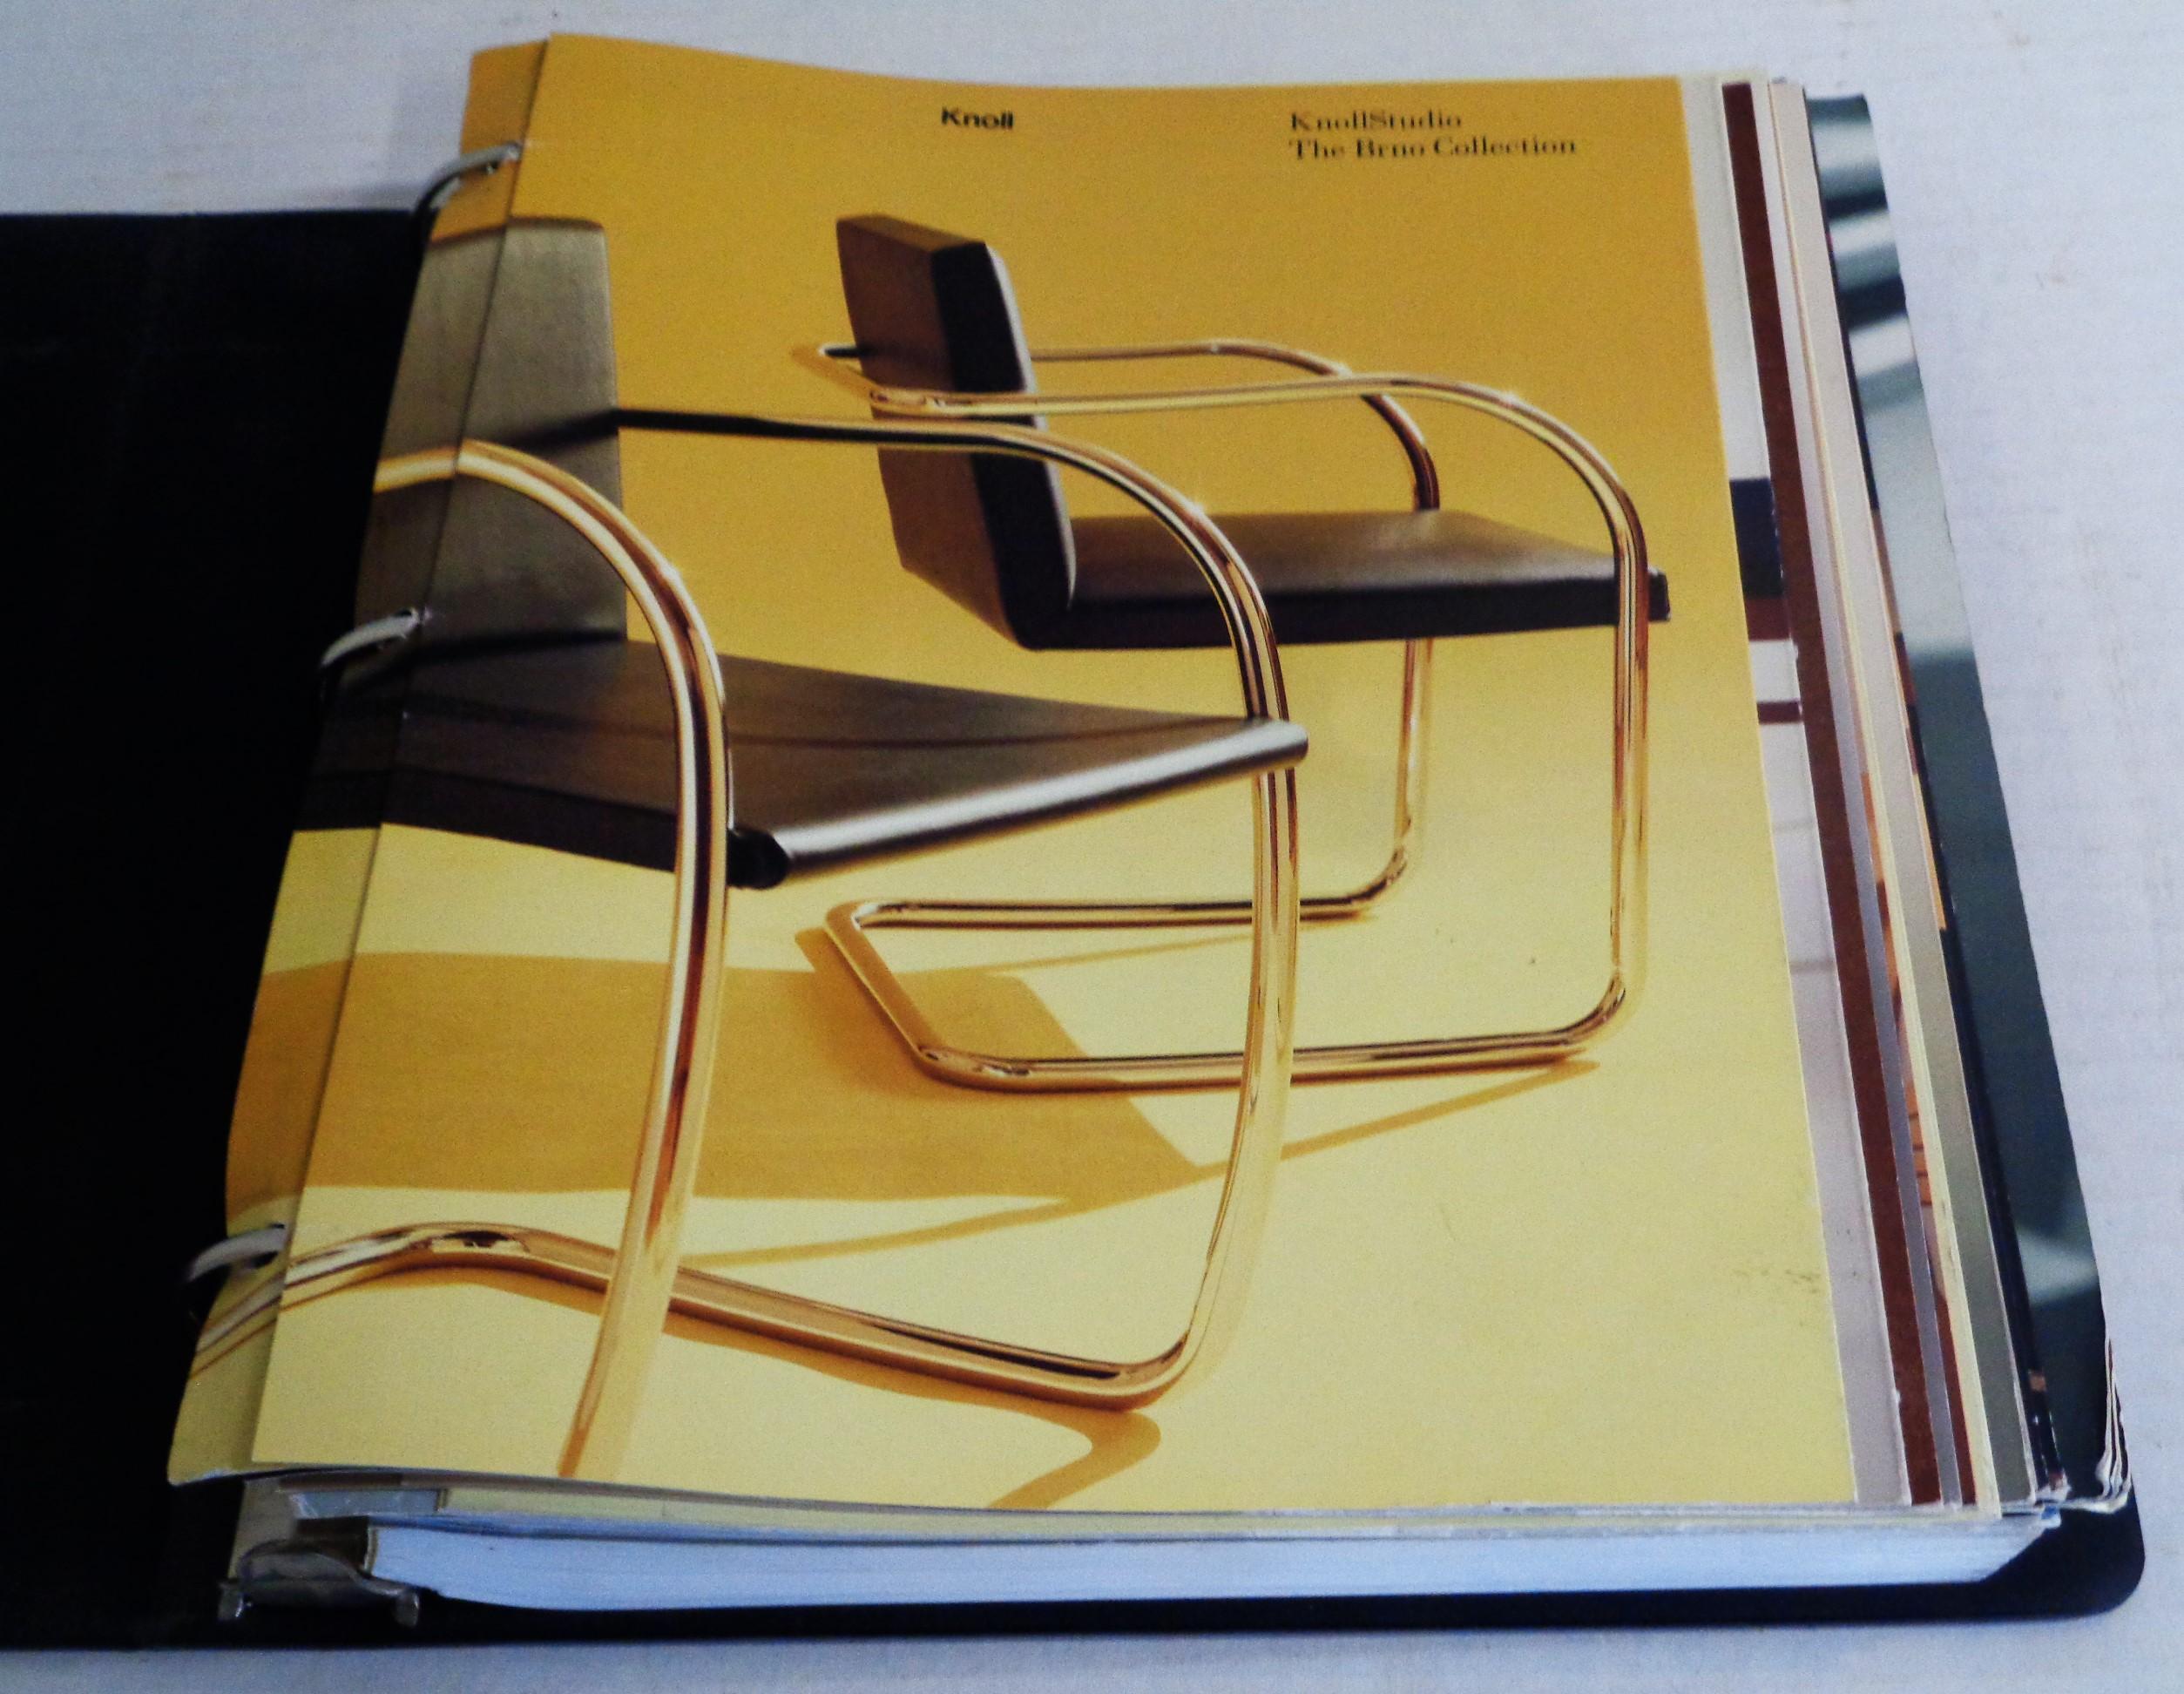 Classeur à trois anneaux Knoll avec catalogues de collection Knoll et liste de prix Knoll Studio - 306 pages montrant des images, des diagrammes, des dimensions, des finitions, des tissus - pour la collection de l'année 2000. Les catalogues sont